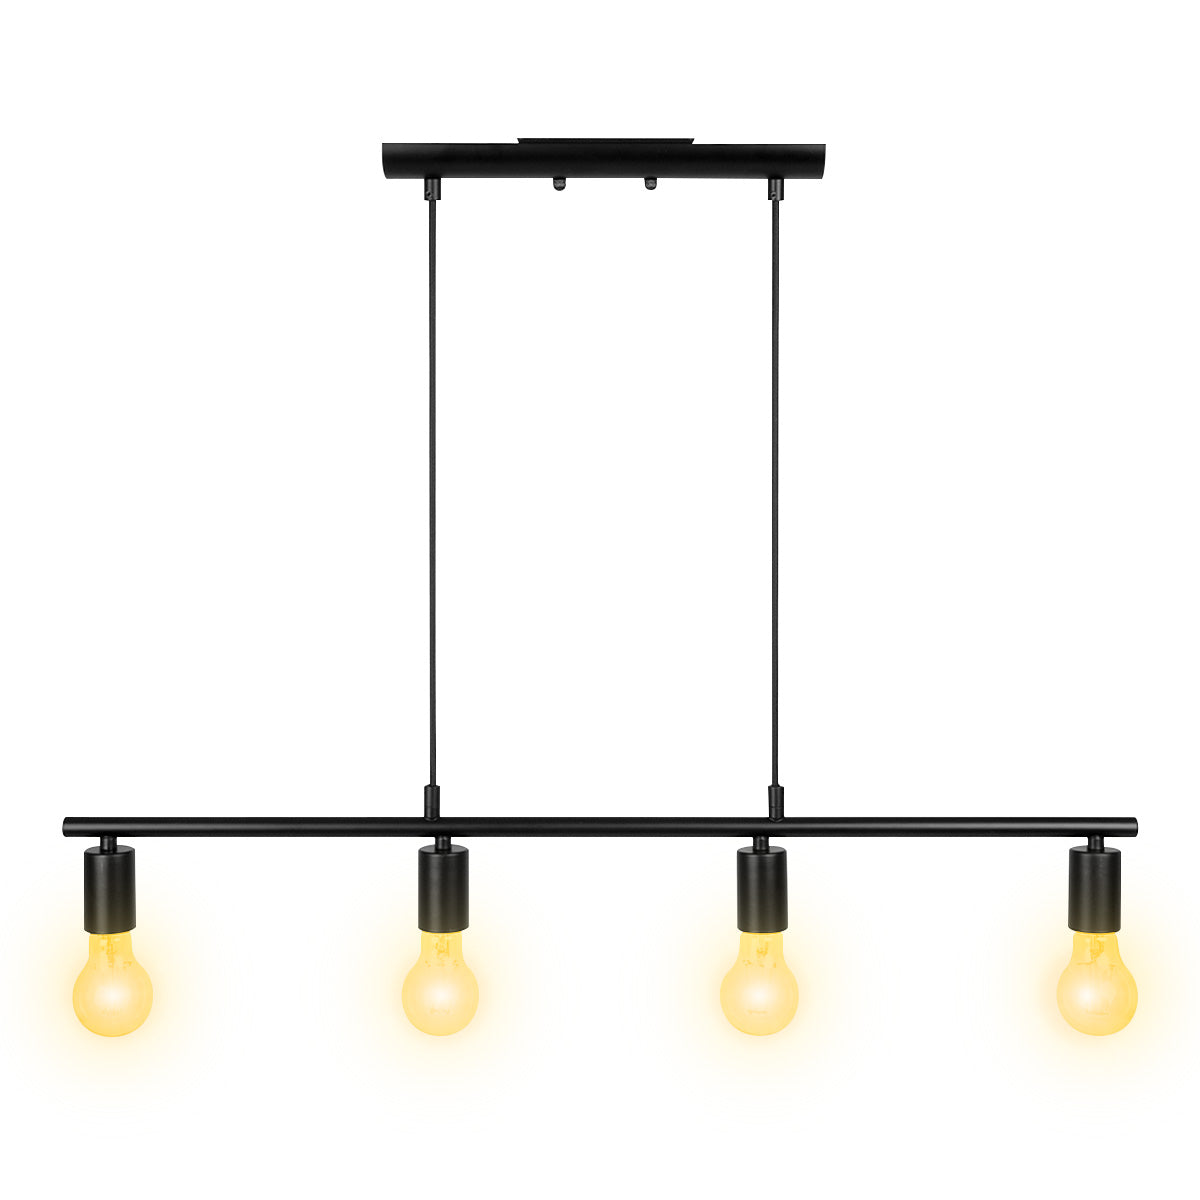 Lámpara decorativa LED de suspender en techo 4x6W, Modelo DL-6624.N30 Dekor